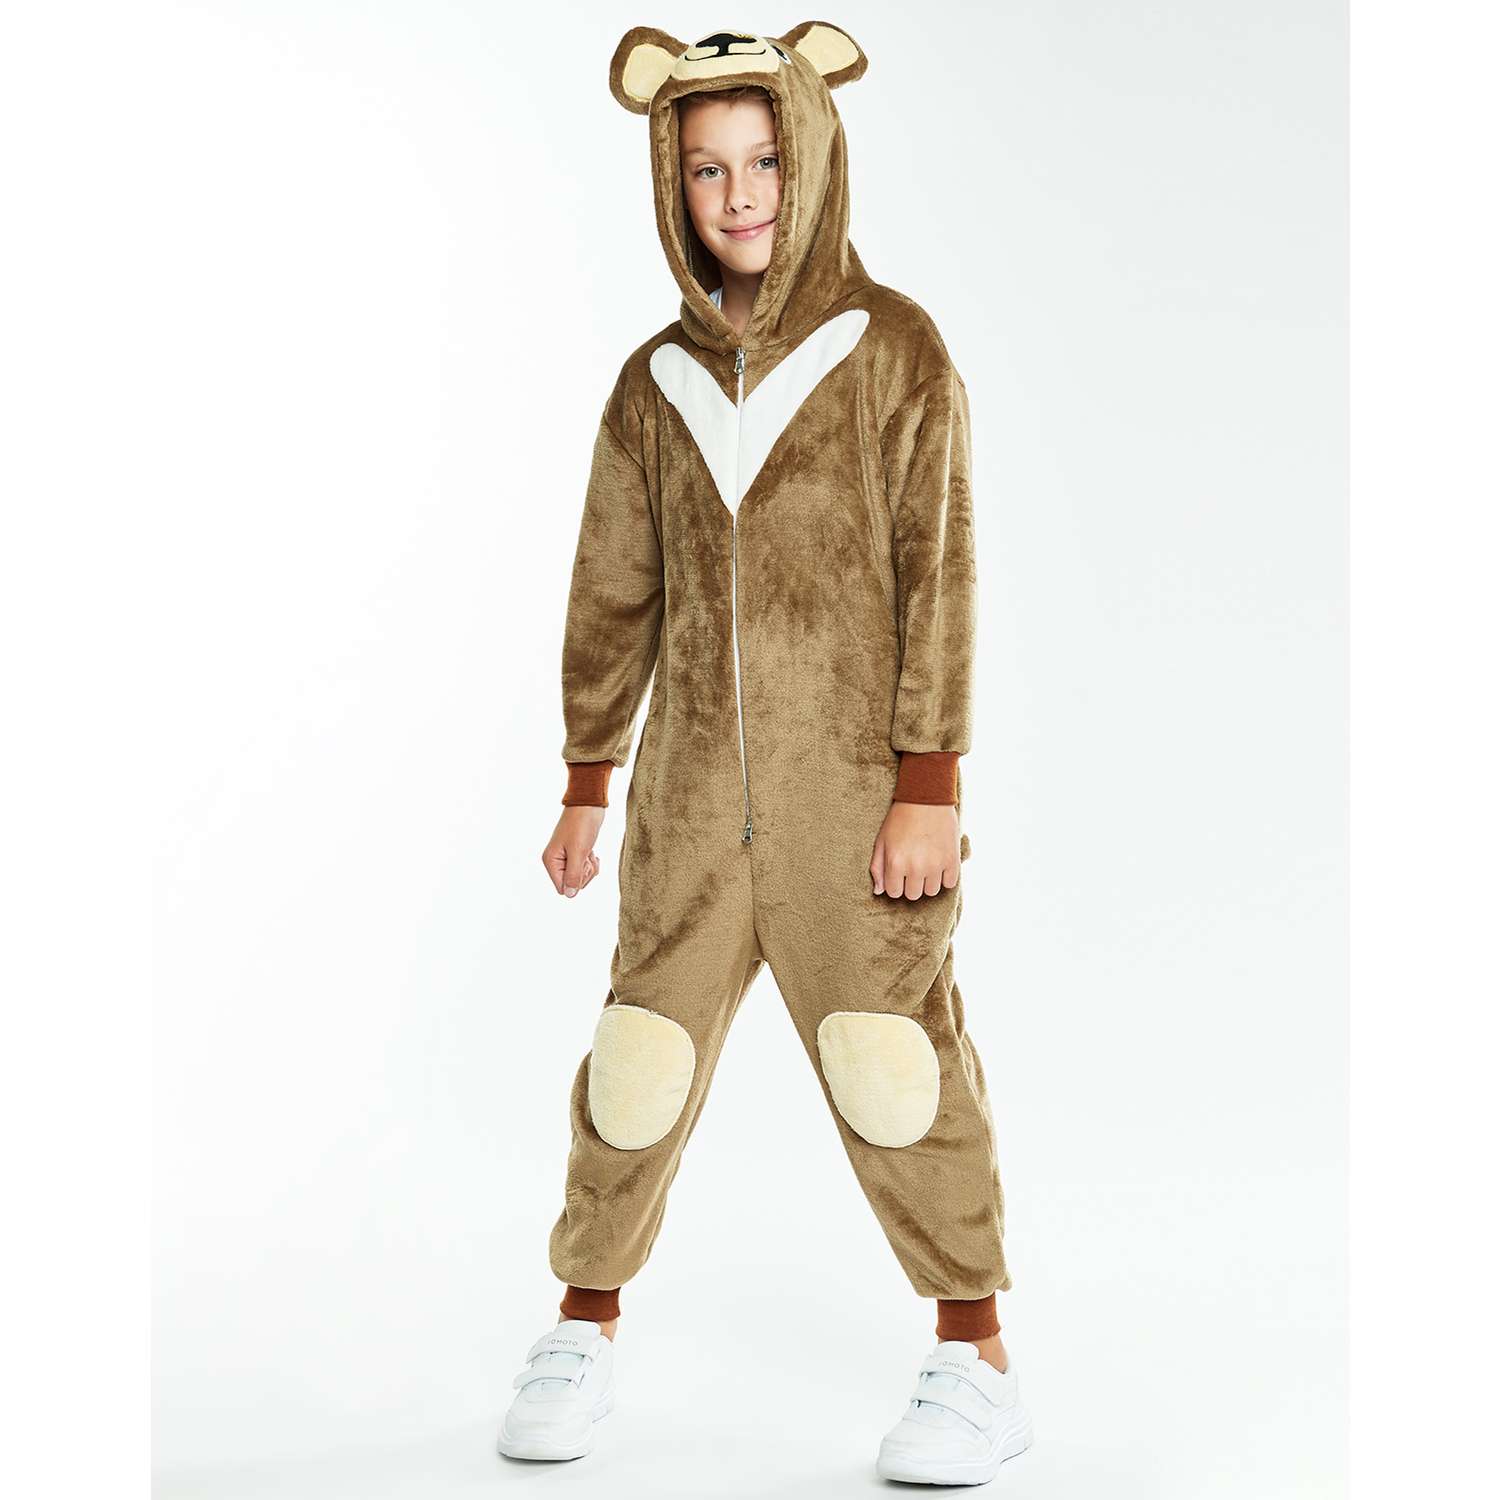 Детский карнавальный костюм Медвежонка купить в интернет магазине